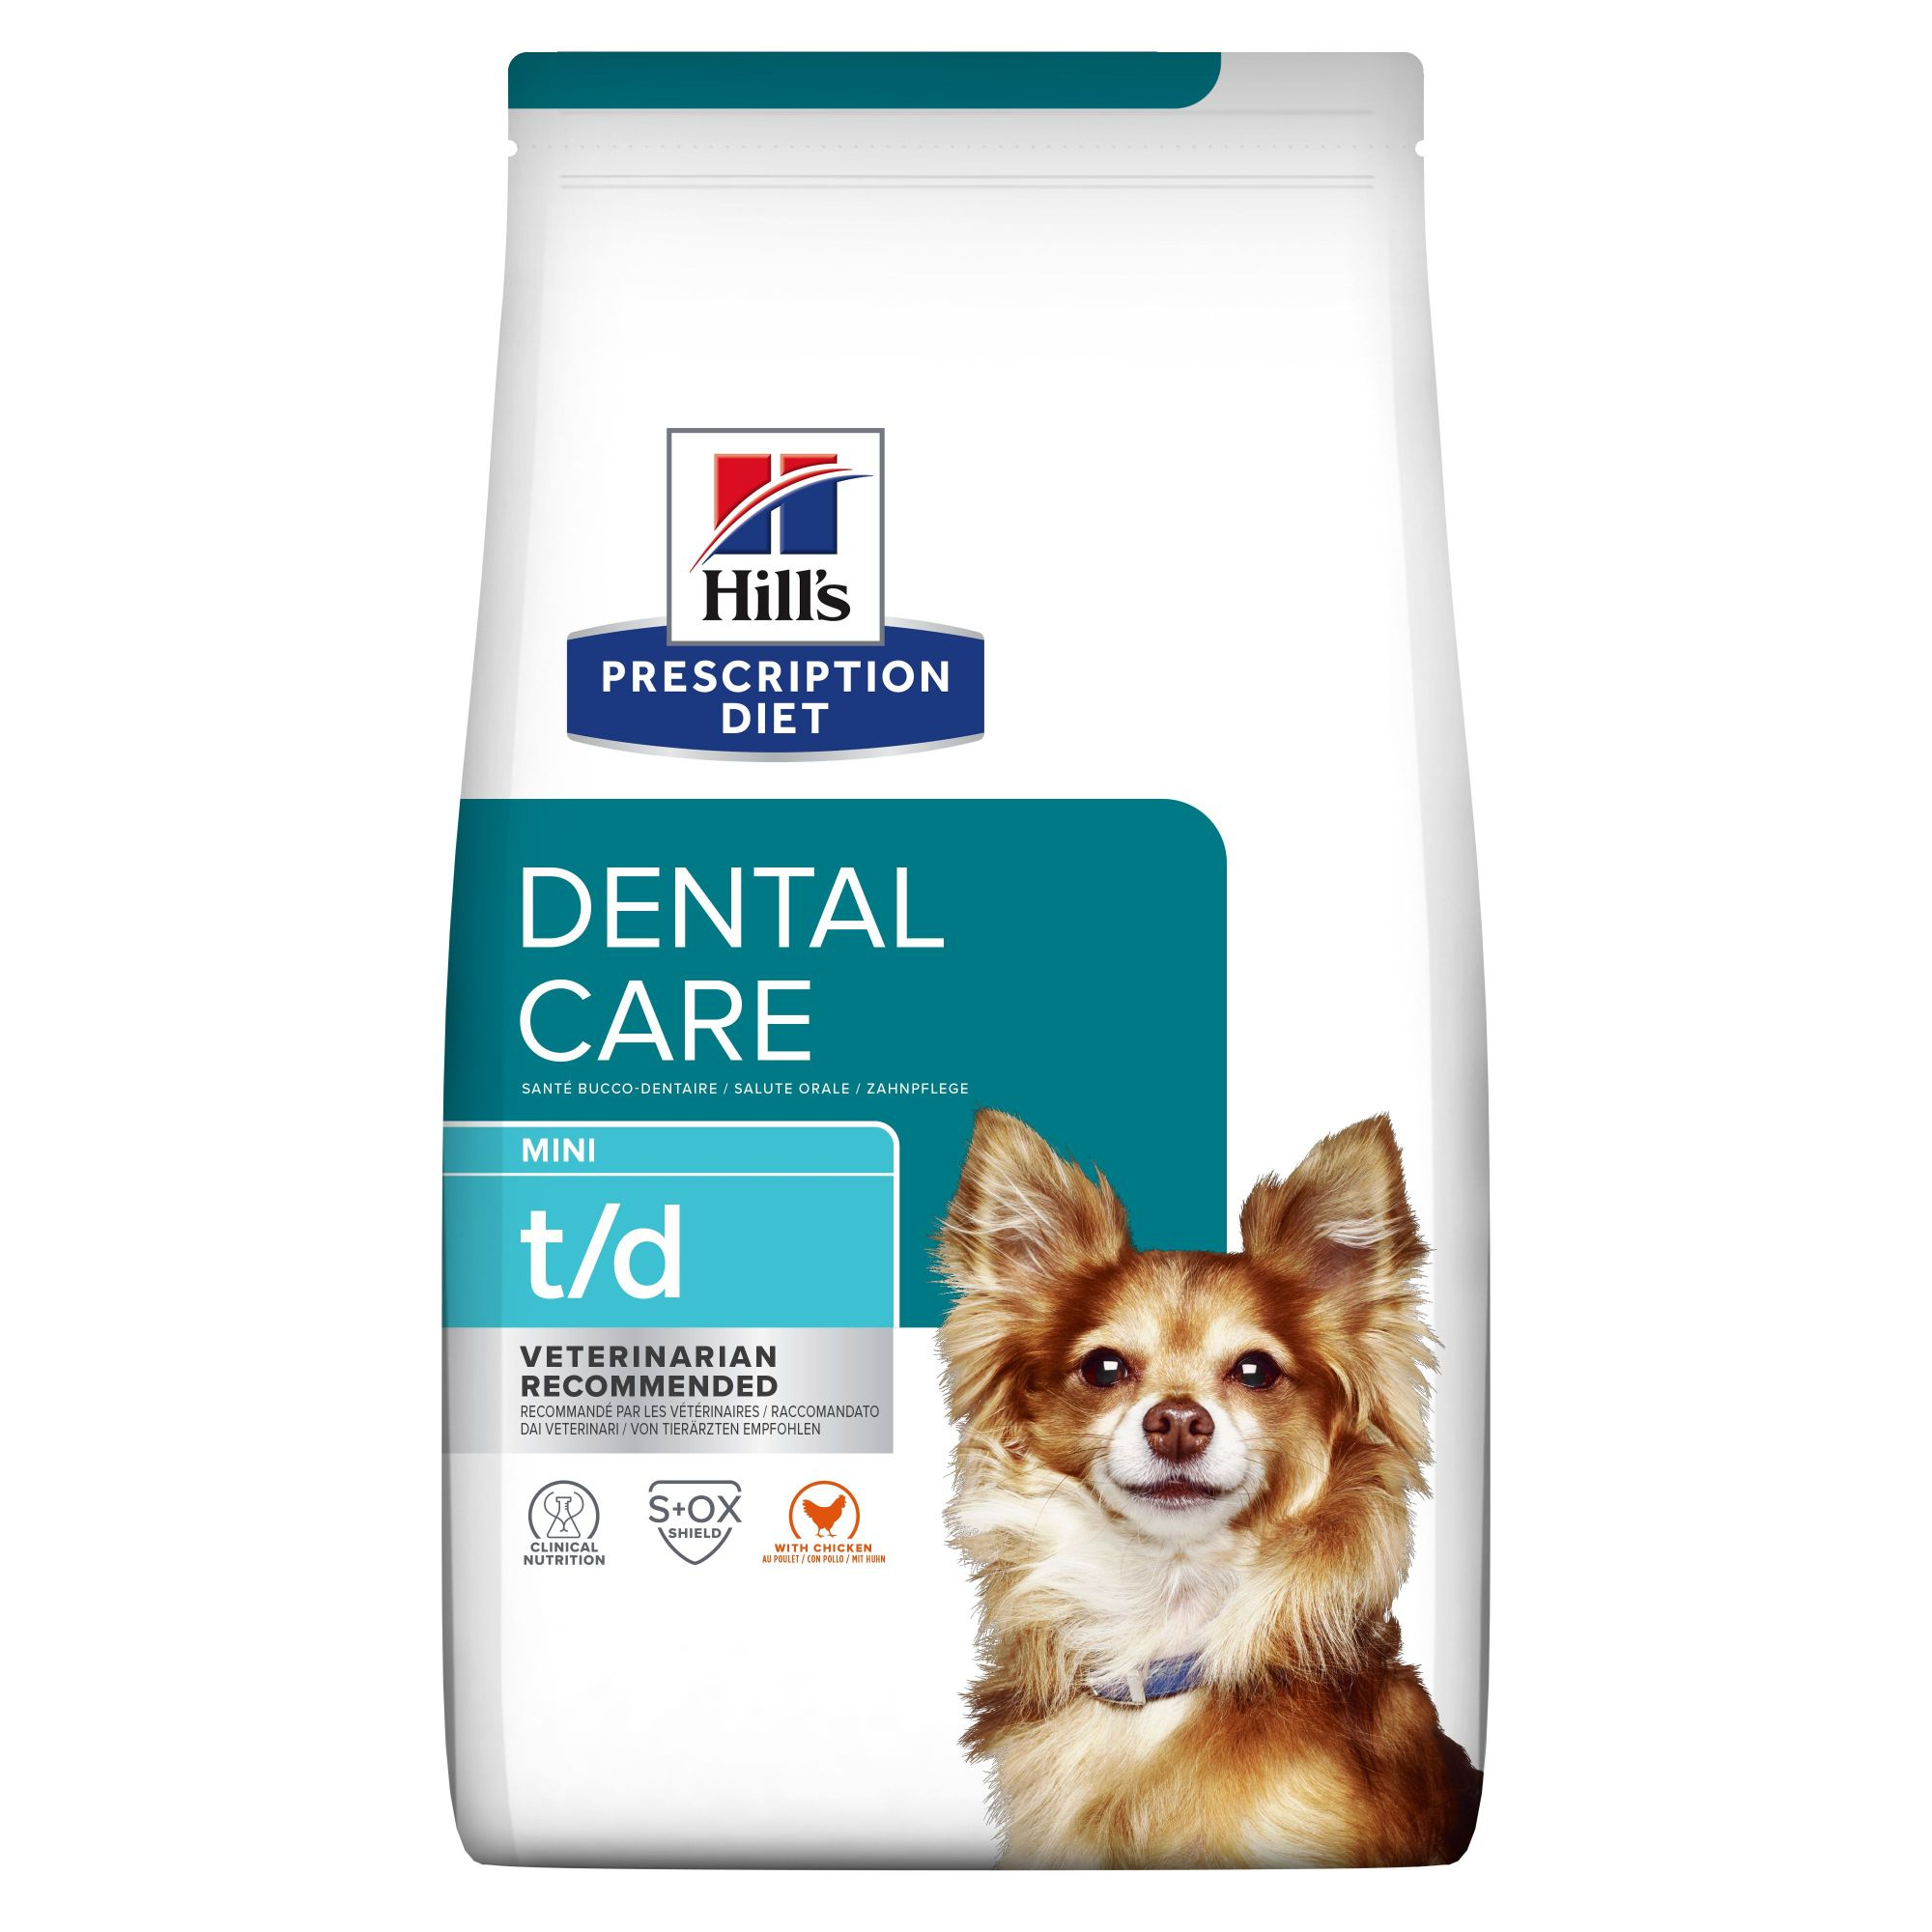 HILL'S Prescription Diet Mini t/d Dental Care para perros